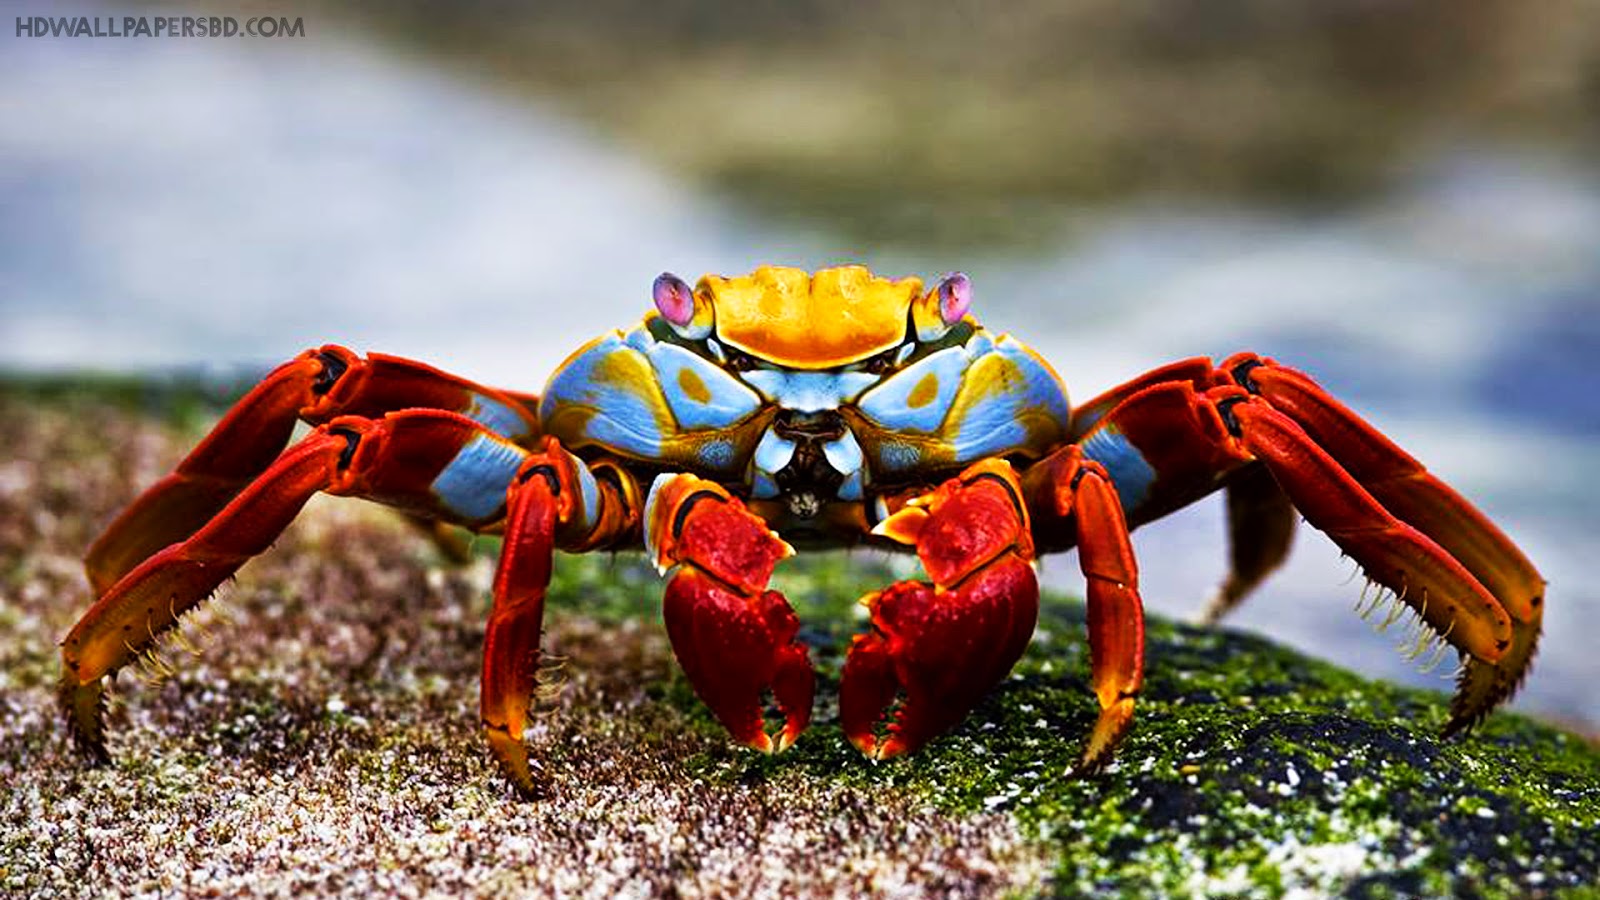 http://www.hdwallpapersbd.com/animals-hdwallpapers-new/a-beautiful-sally-lightfoot-crab